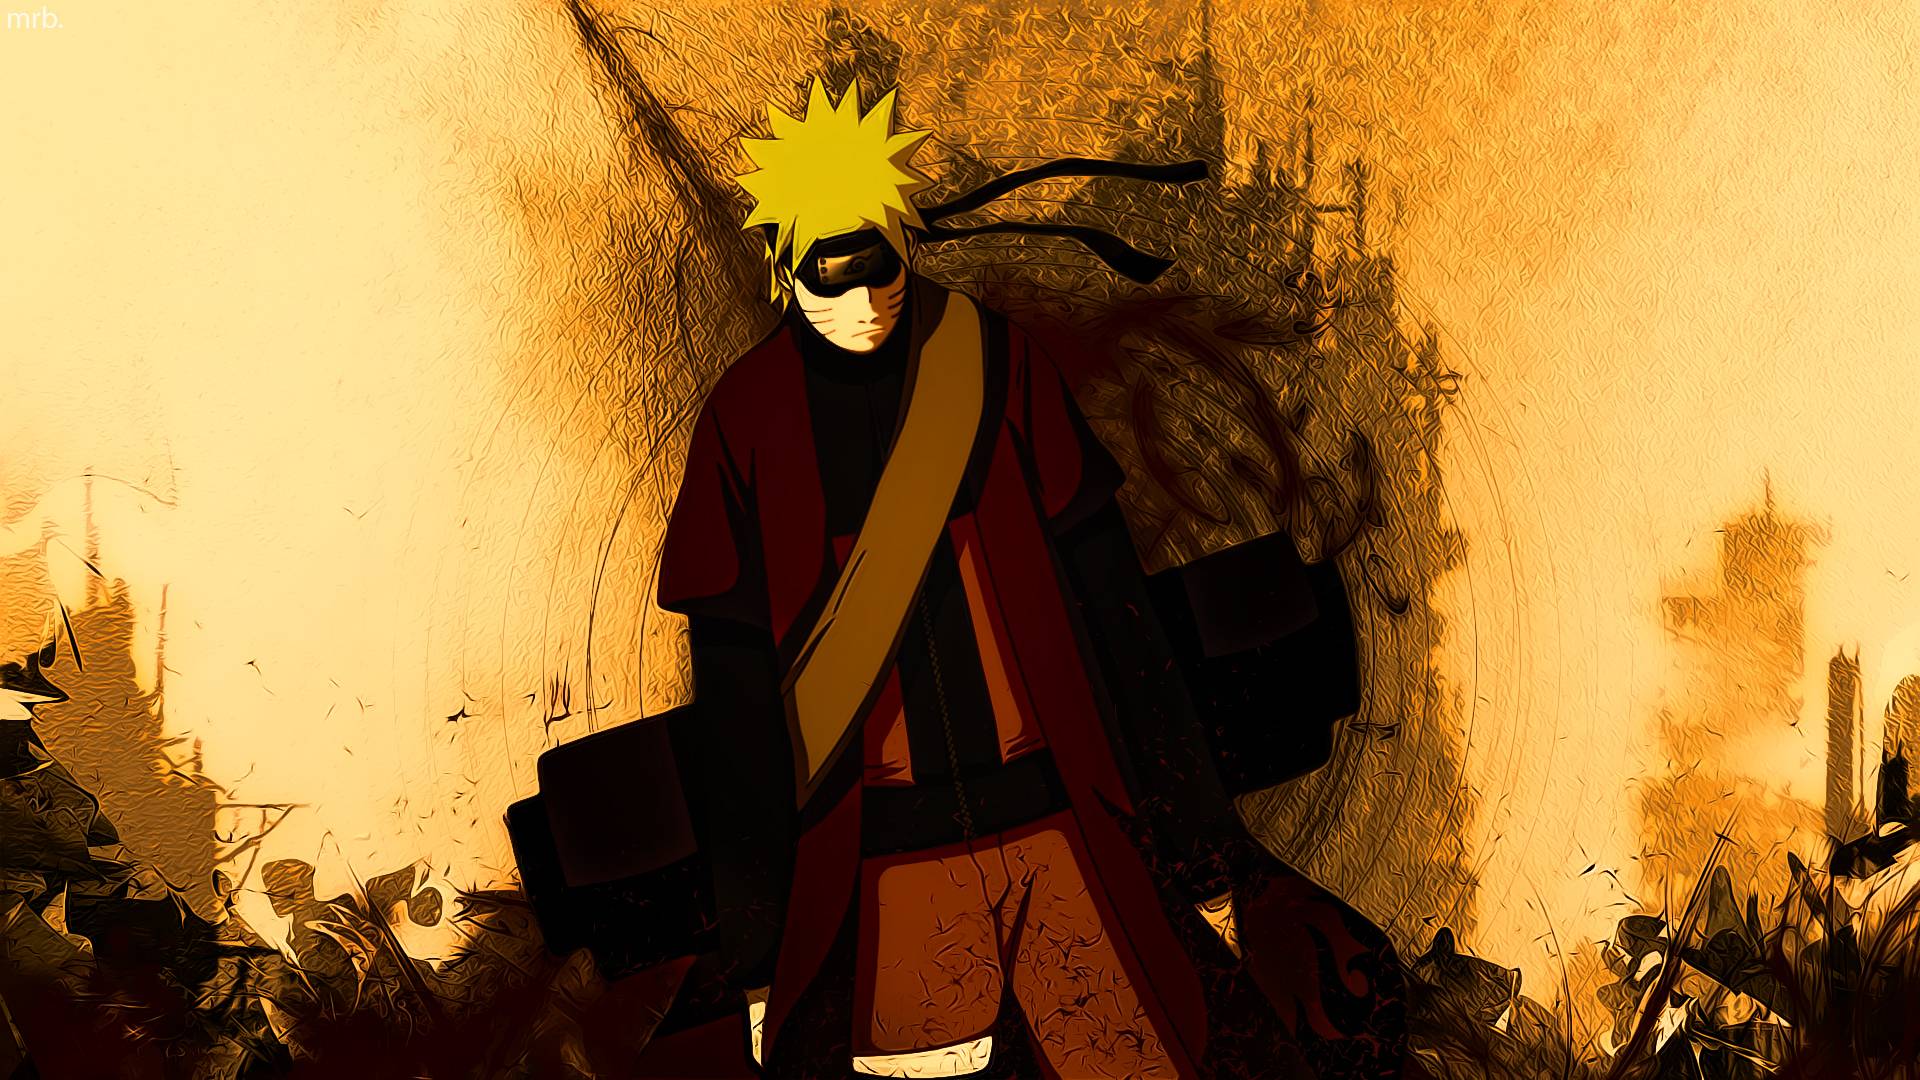 Naruto Wallpaper HD 19 Background. Wallruru